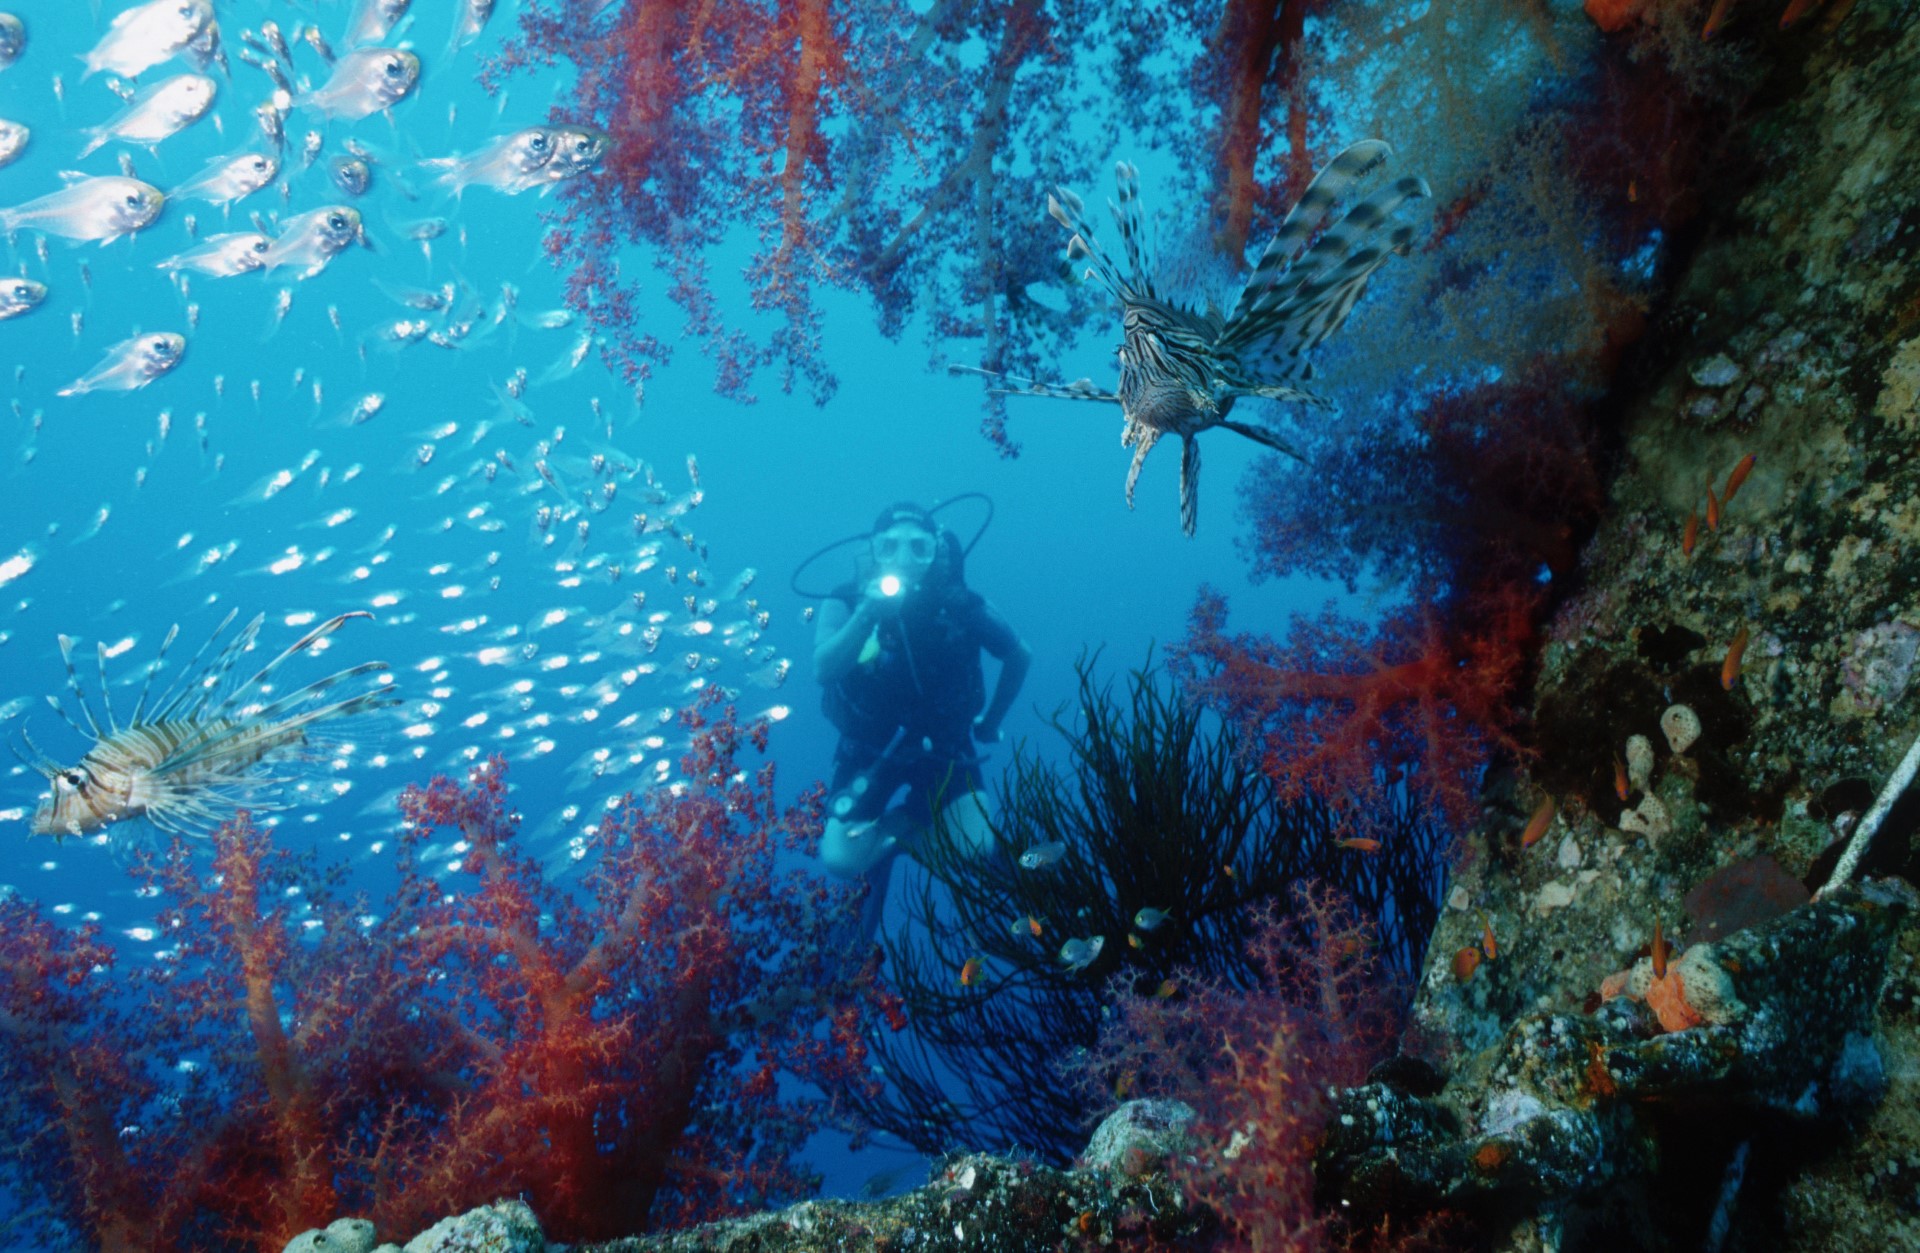 Parmi les actvités incontournables pendant ses vacances dans le golfe d'Aqaba, la plongée sous-marine (Photo Office de tourisme de Jordanie)